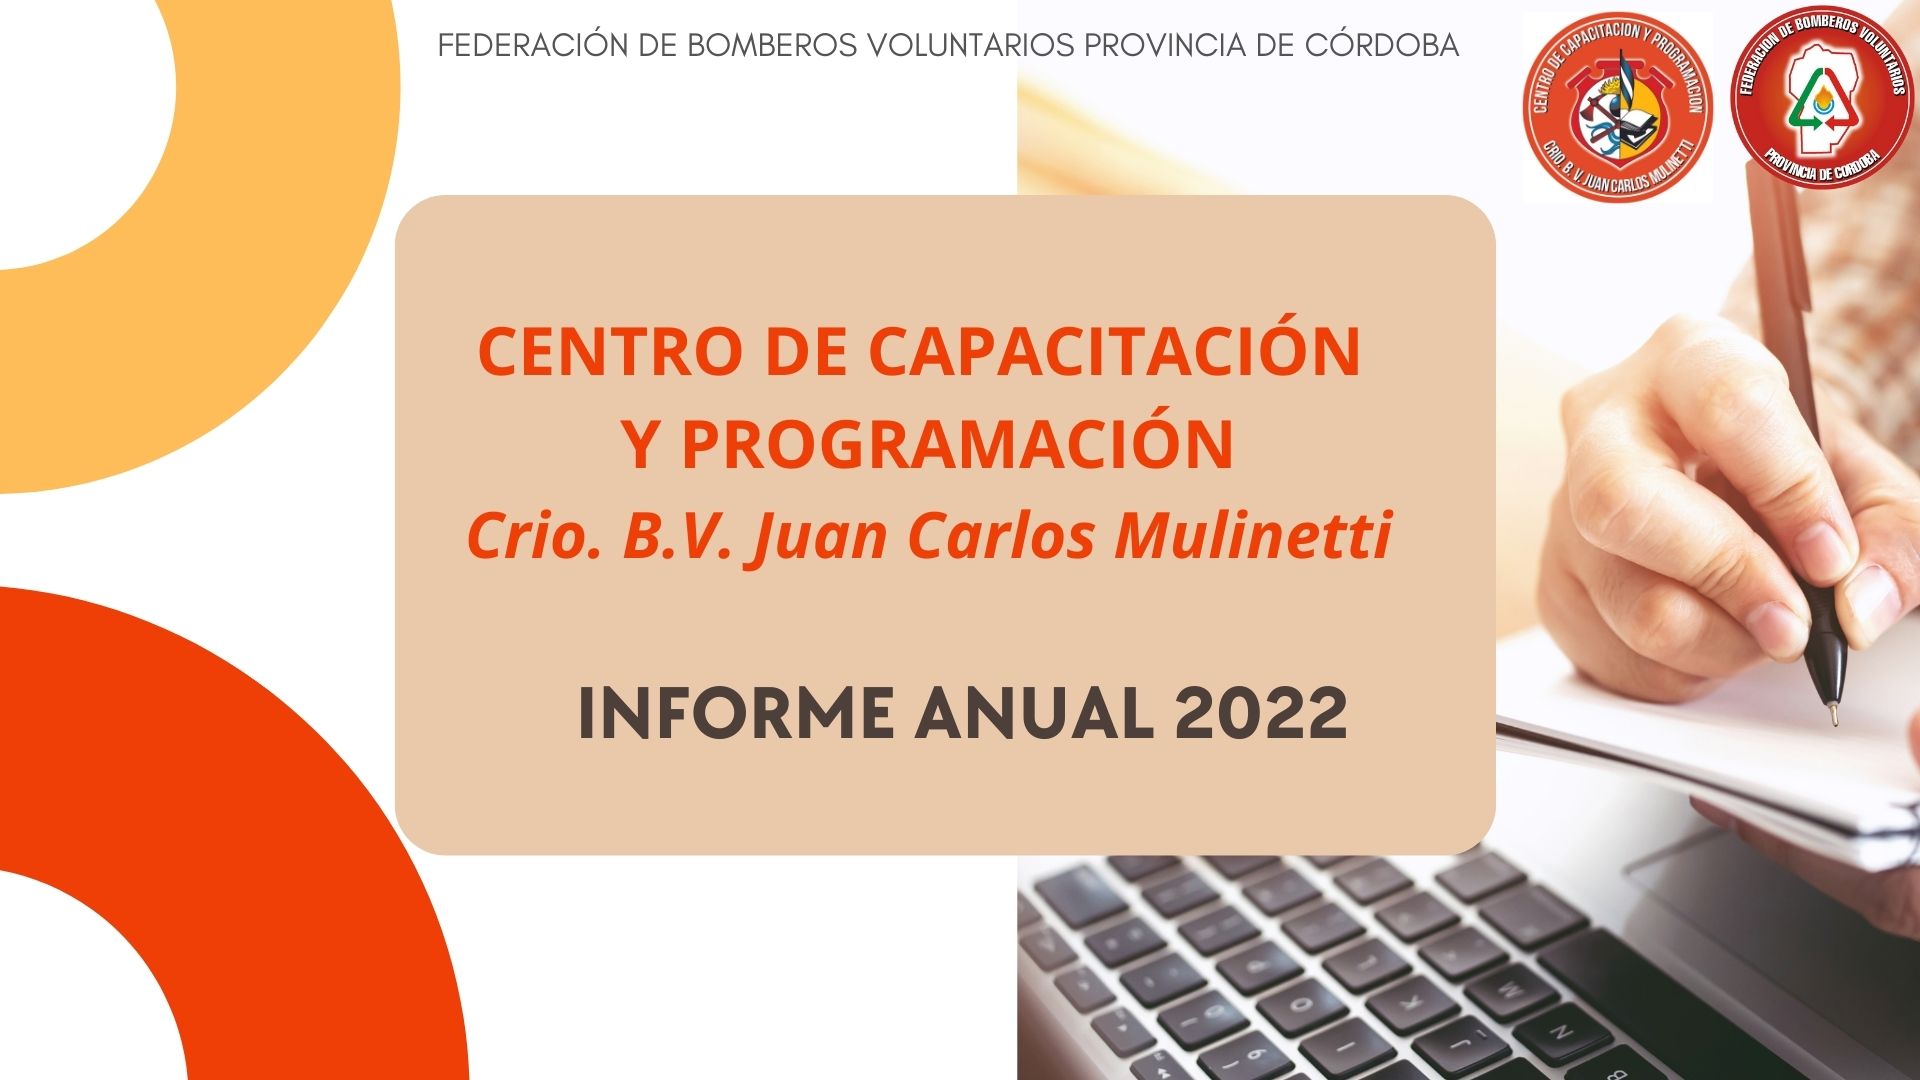 Centro de Capacitación y Programación: Informe Anual 2022